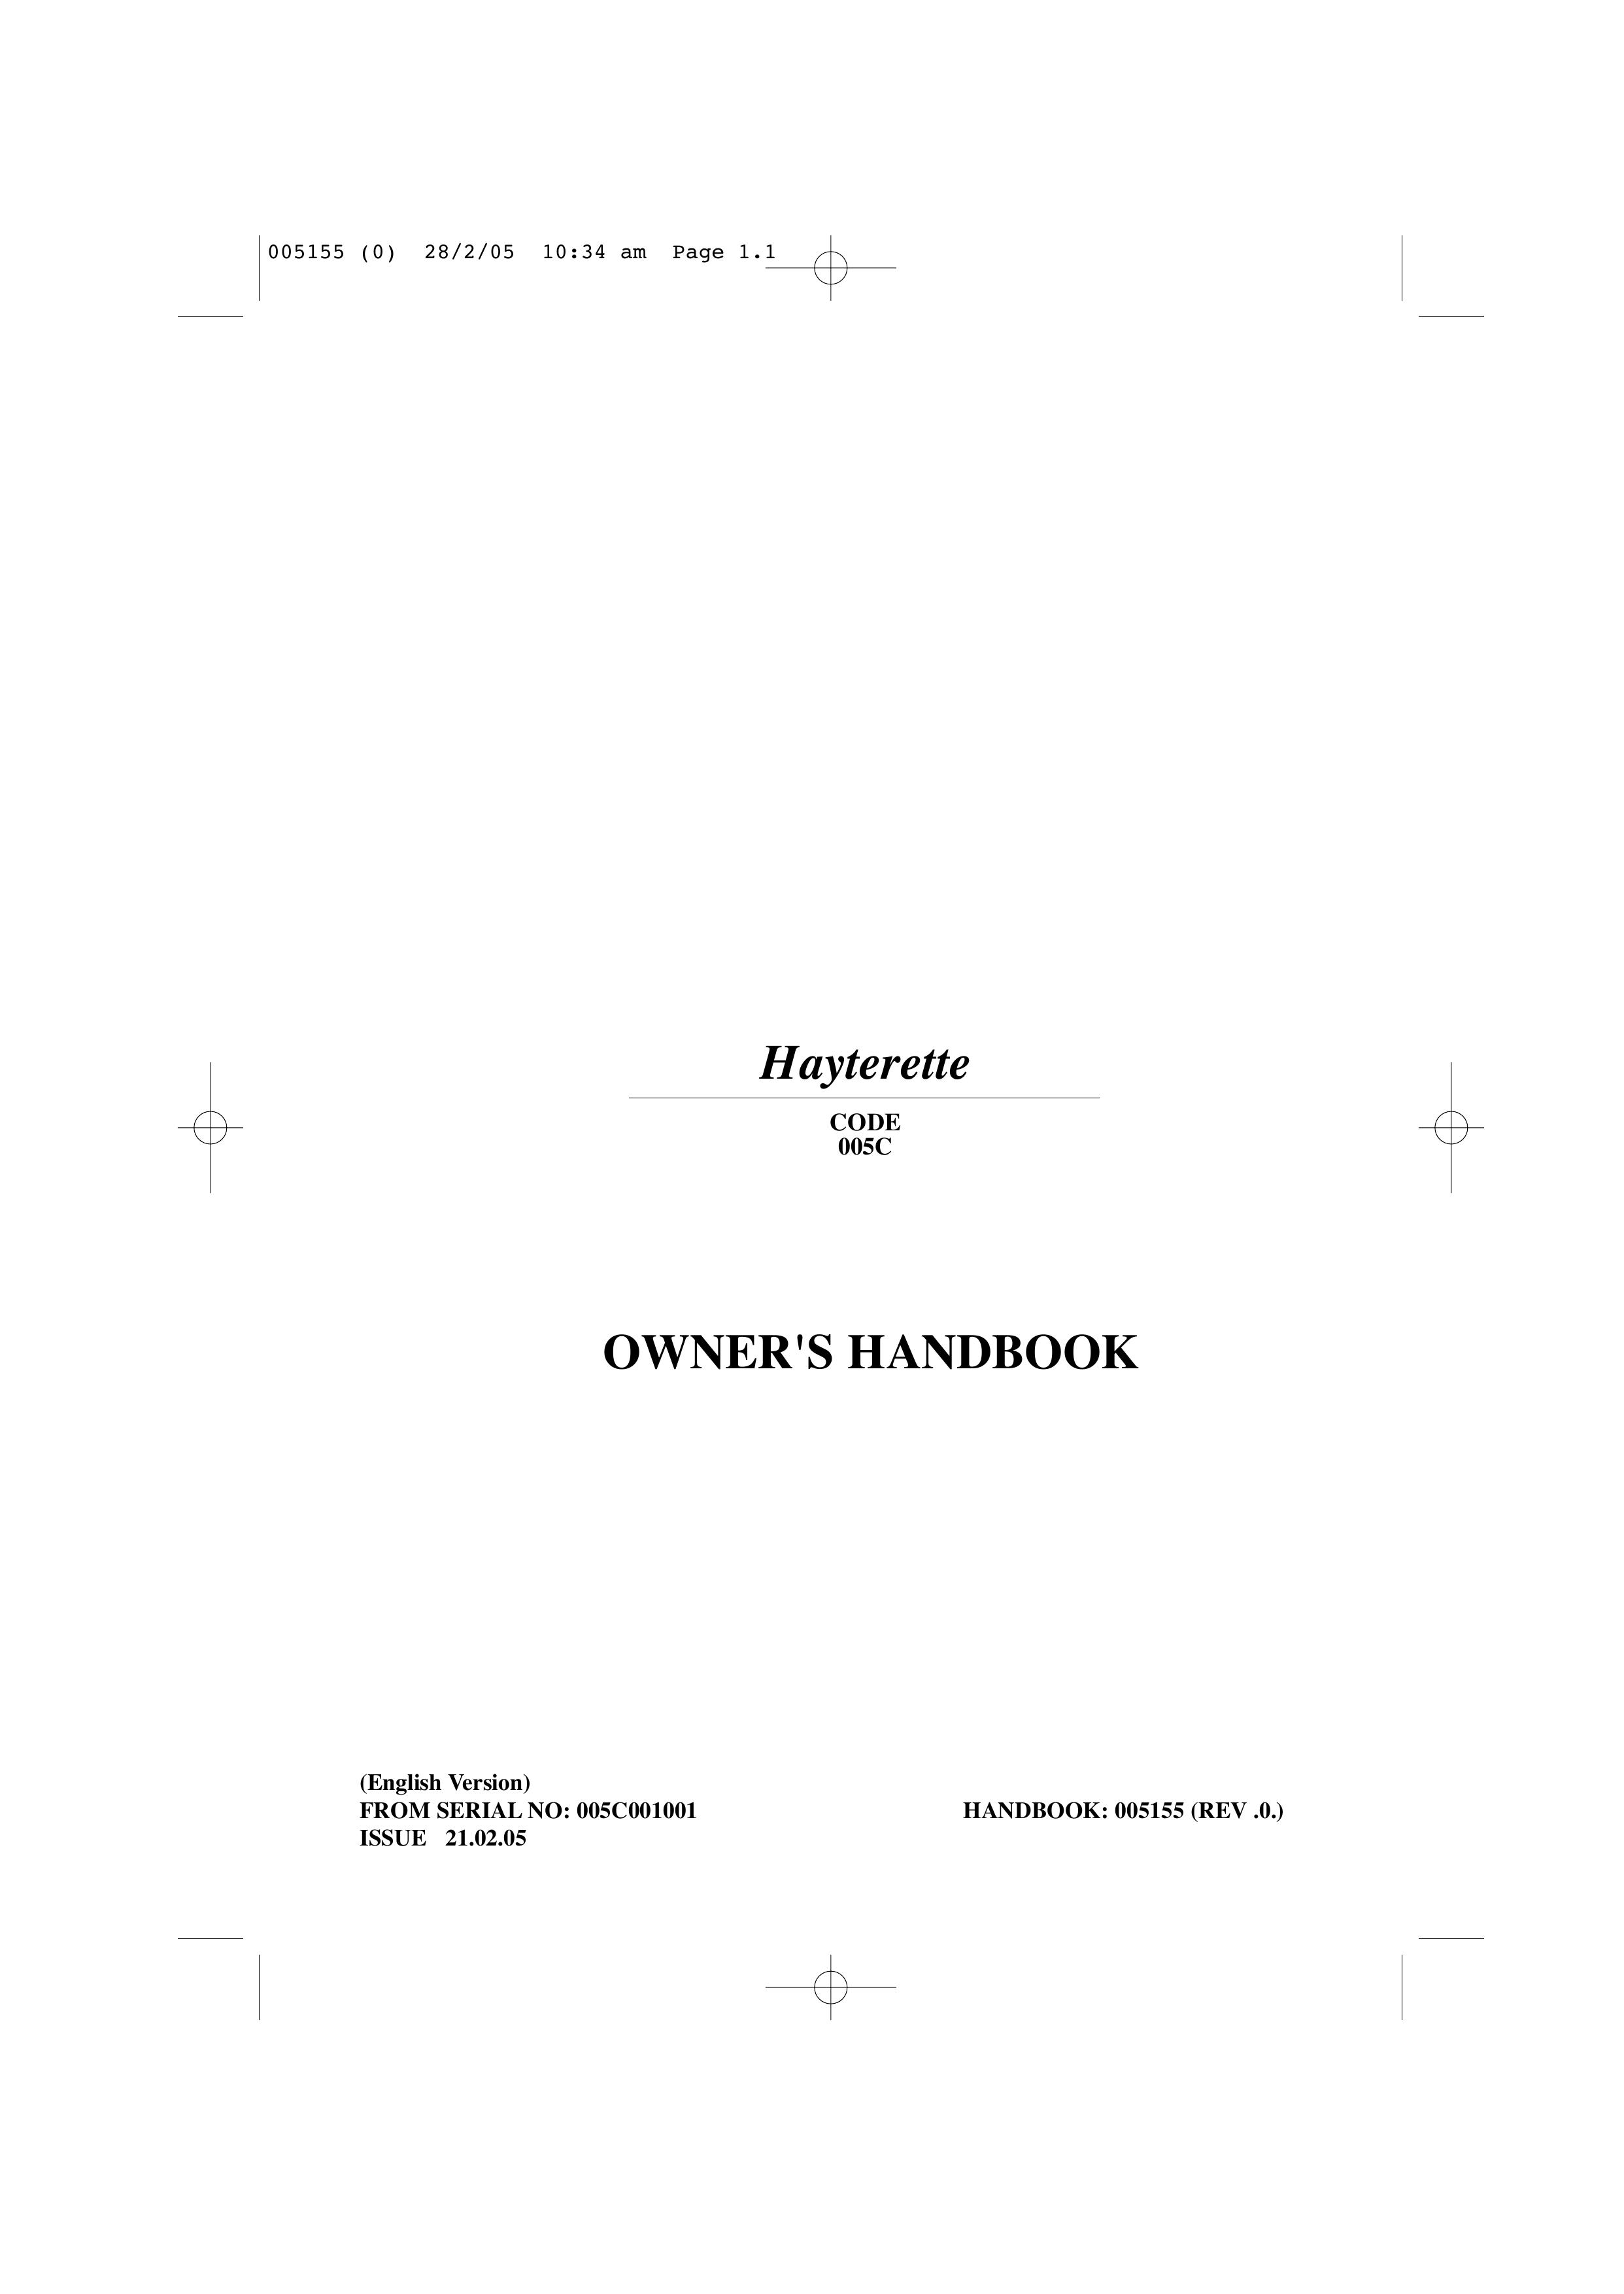 Hayter Mowers 005C Lawn Mower User Manual